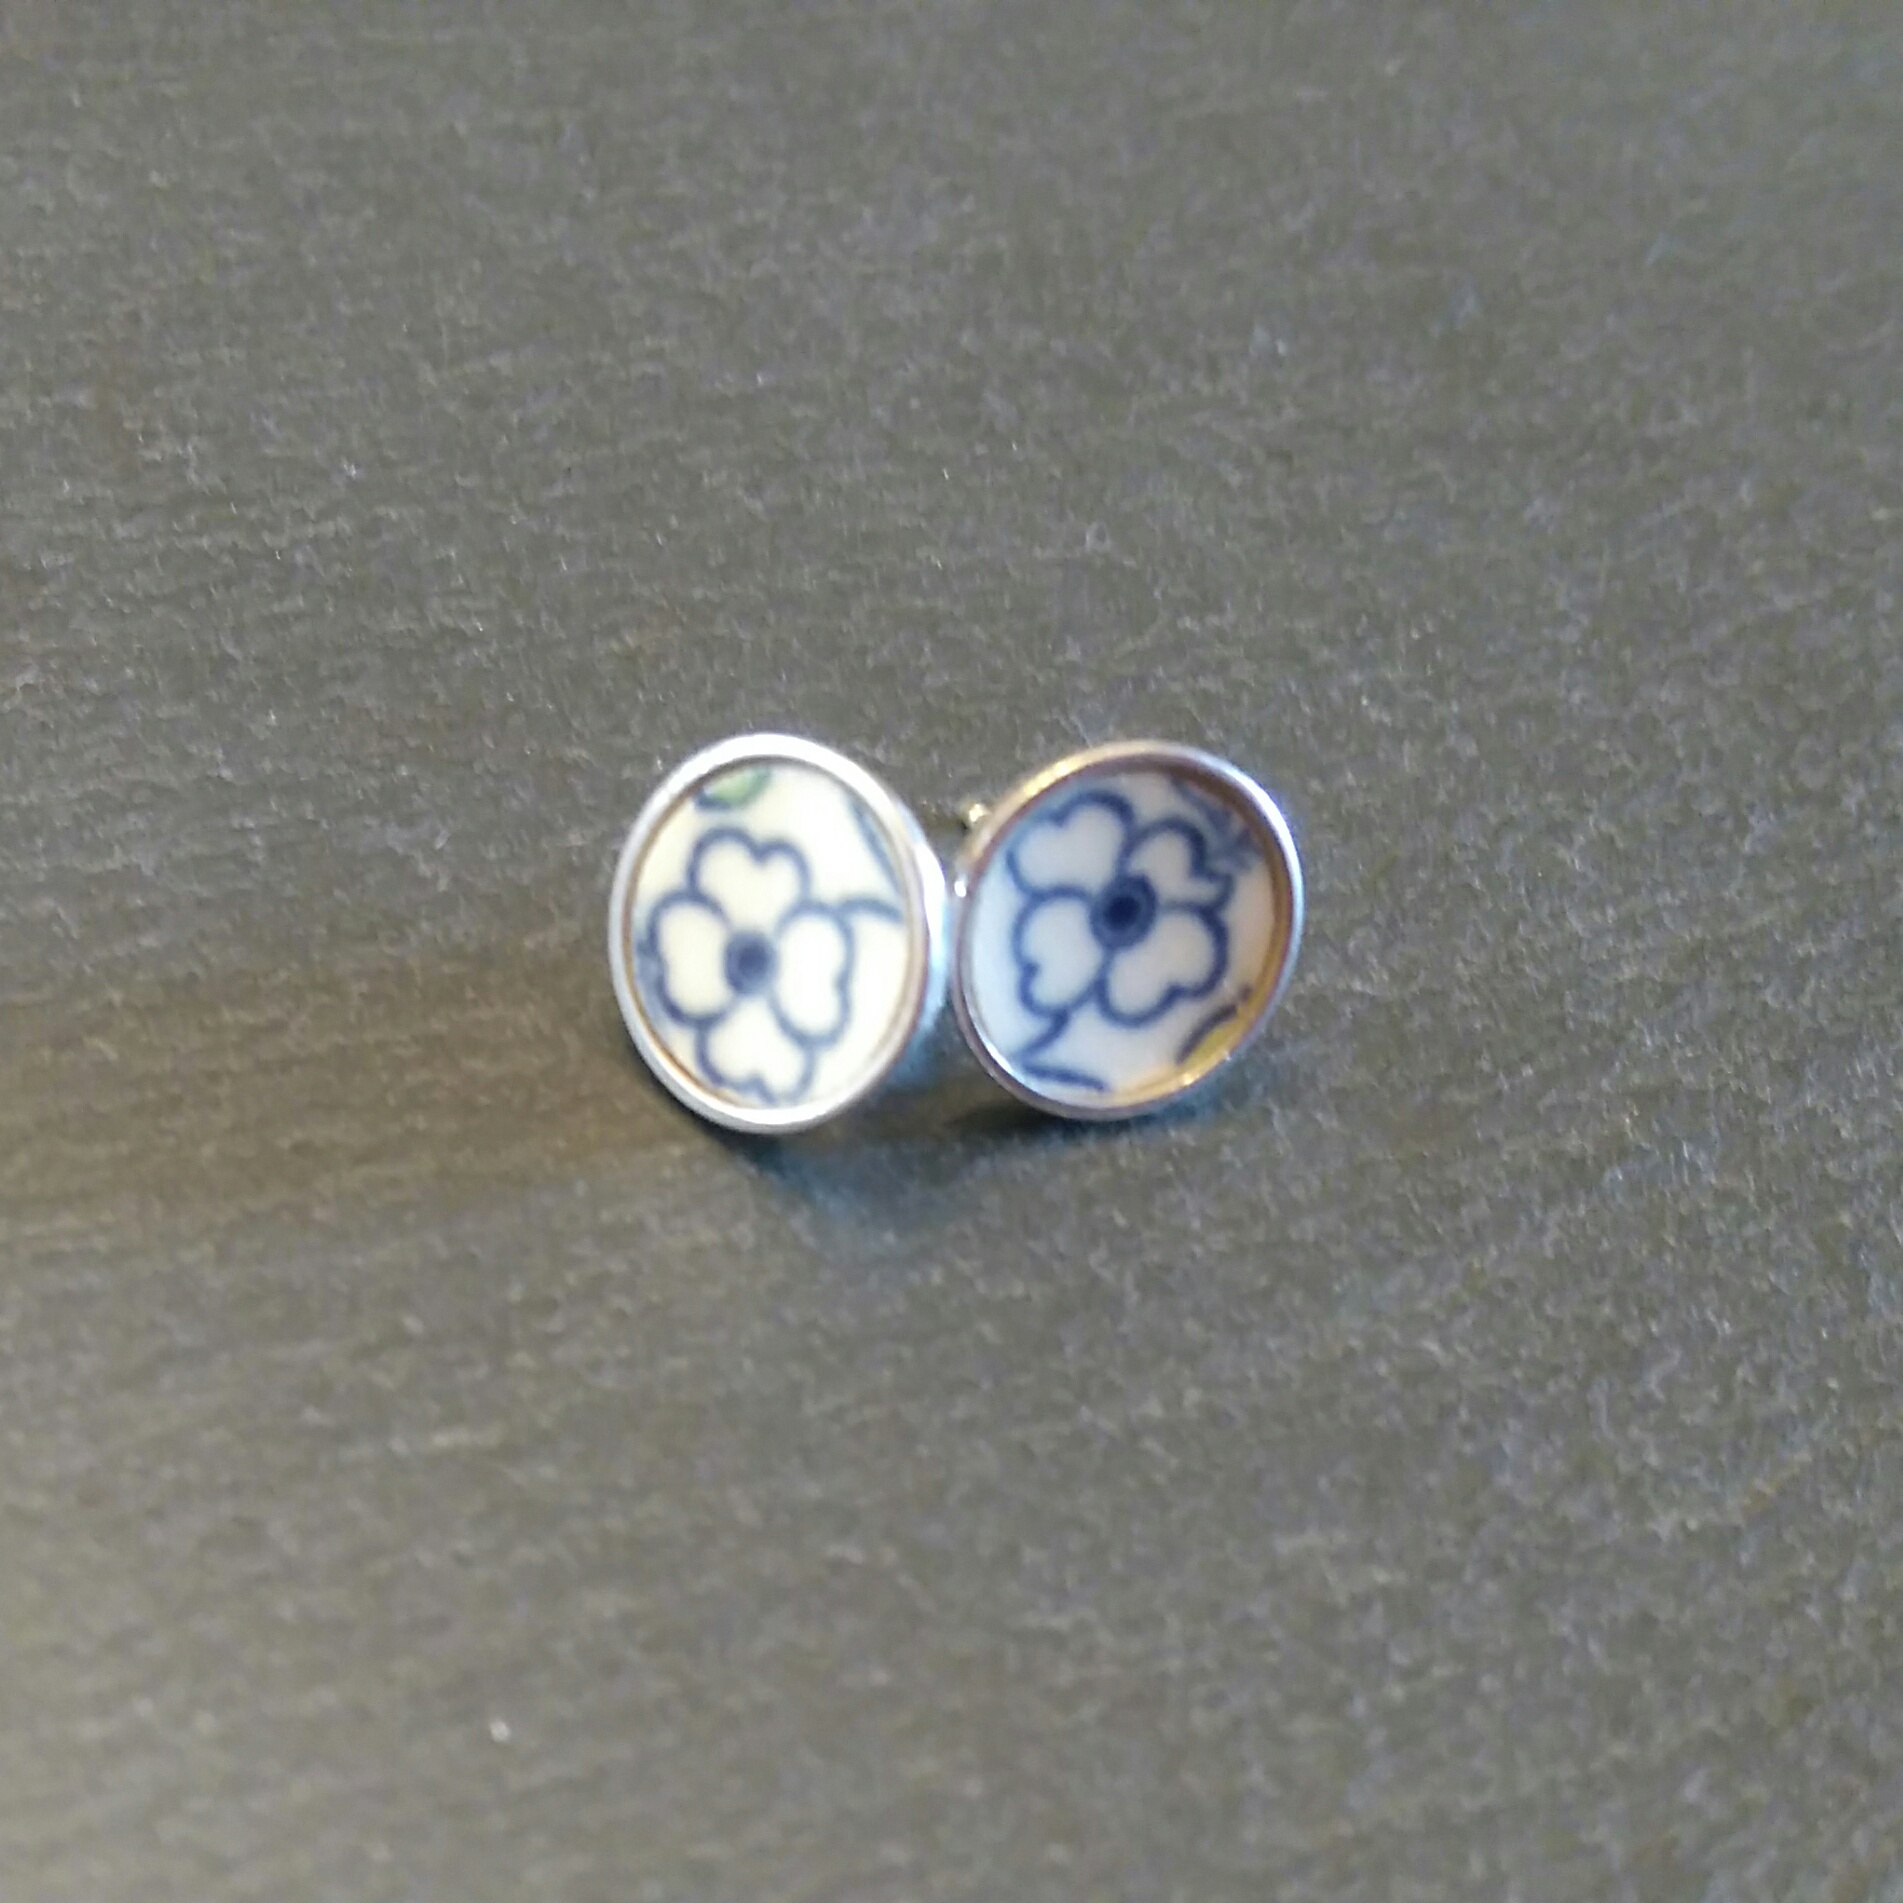 10mm Silver Stud Earrings - Little Blue Flowers Design